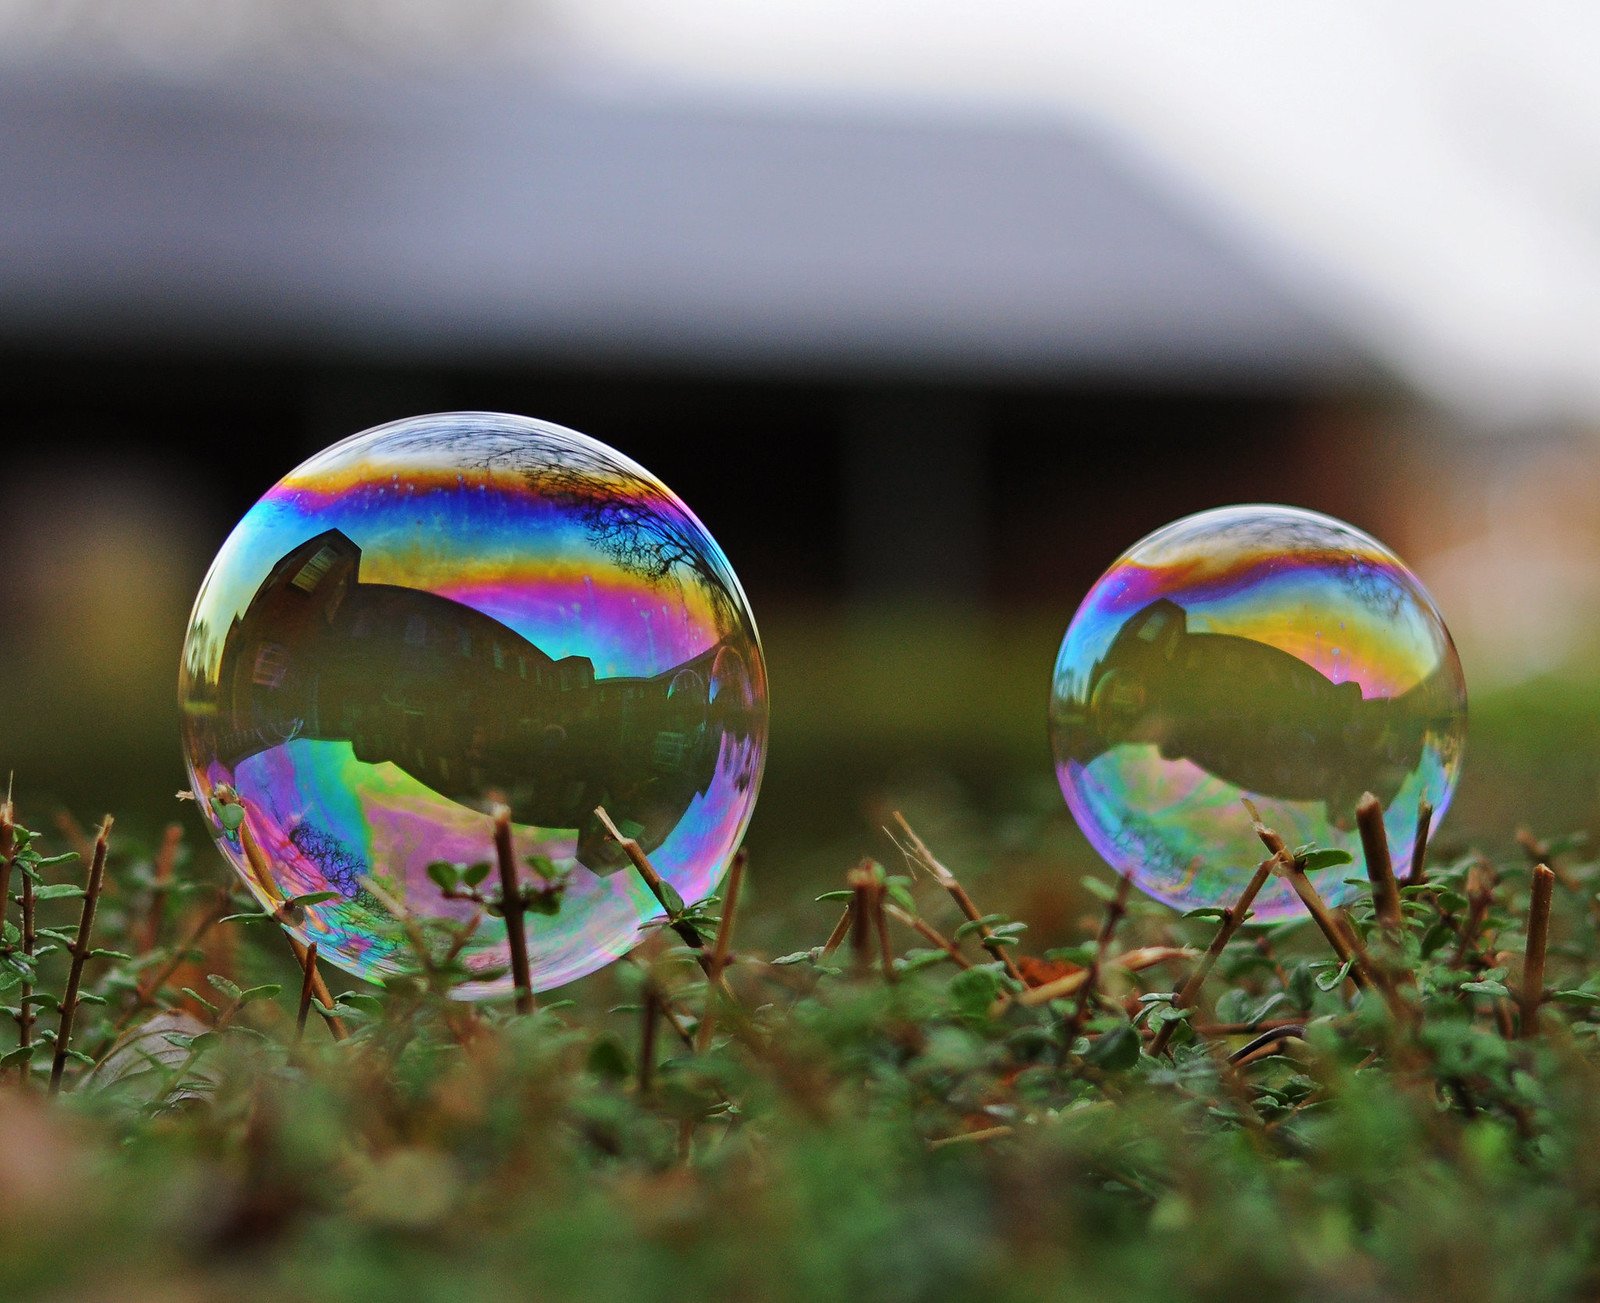 Какое явление объясняет окраску мыльных пузырей